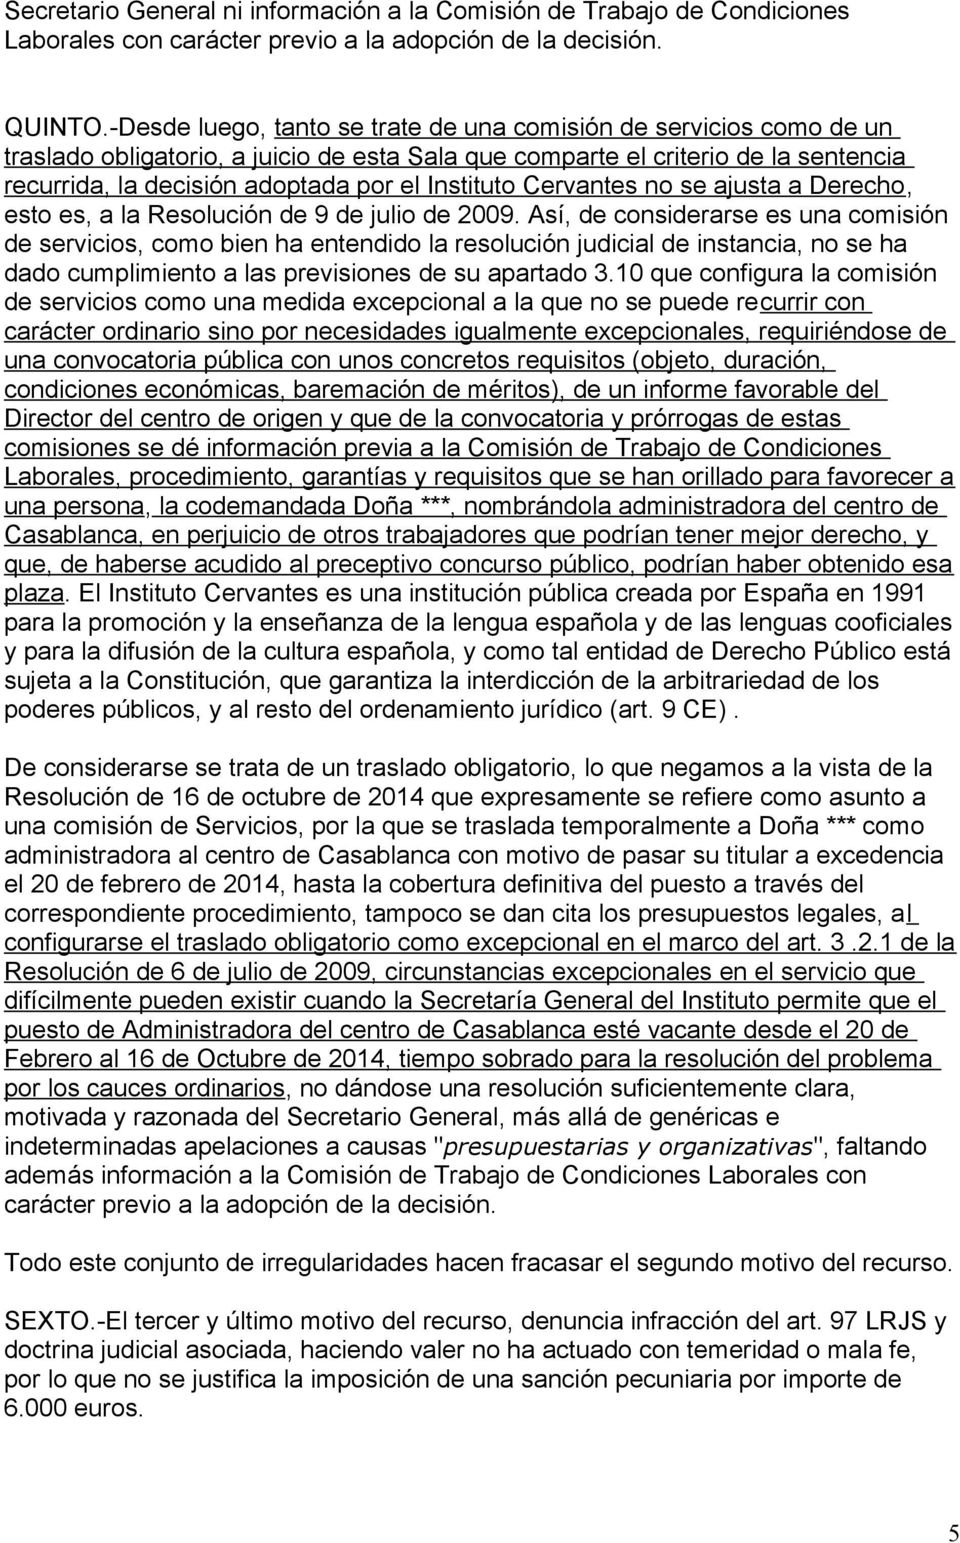 Instituto Cervantes no se ajusta a Derecho, esto es, a la Resolución de 9 de julio de 2009.